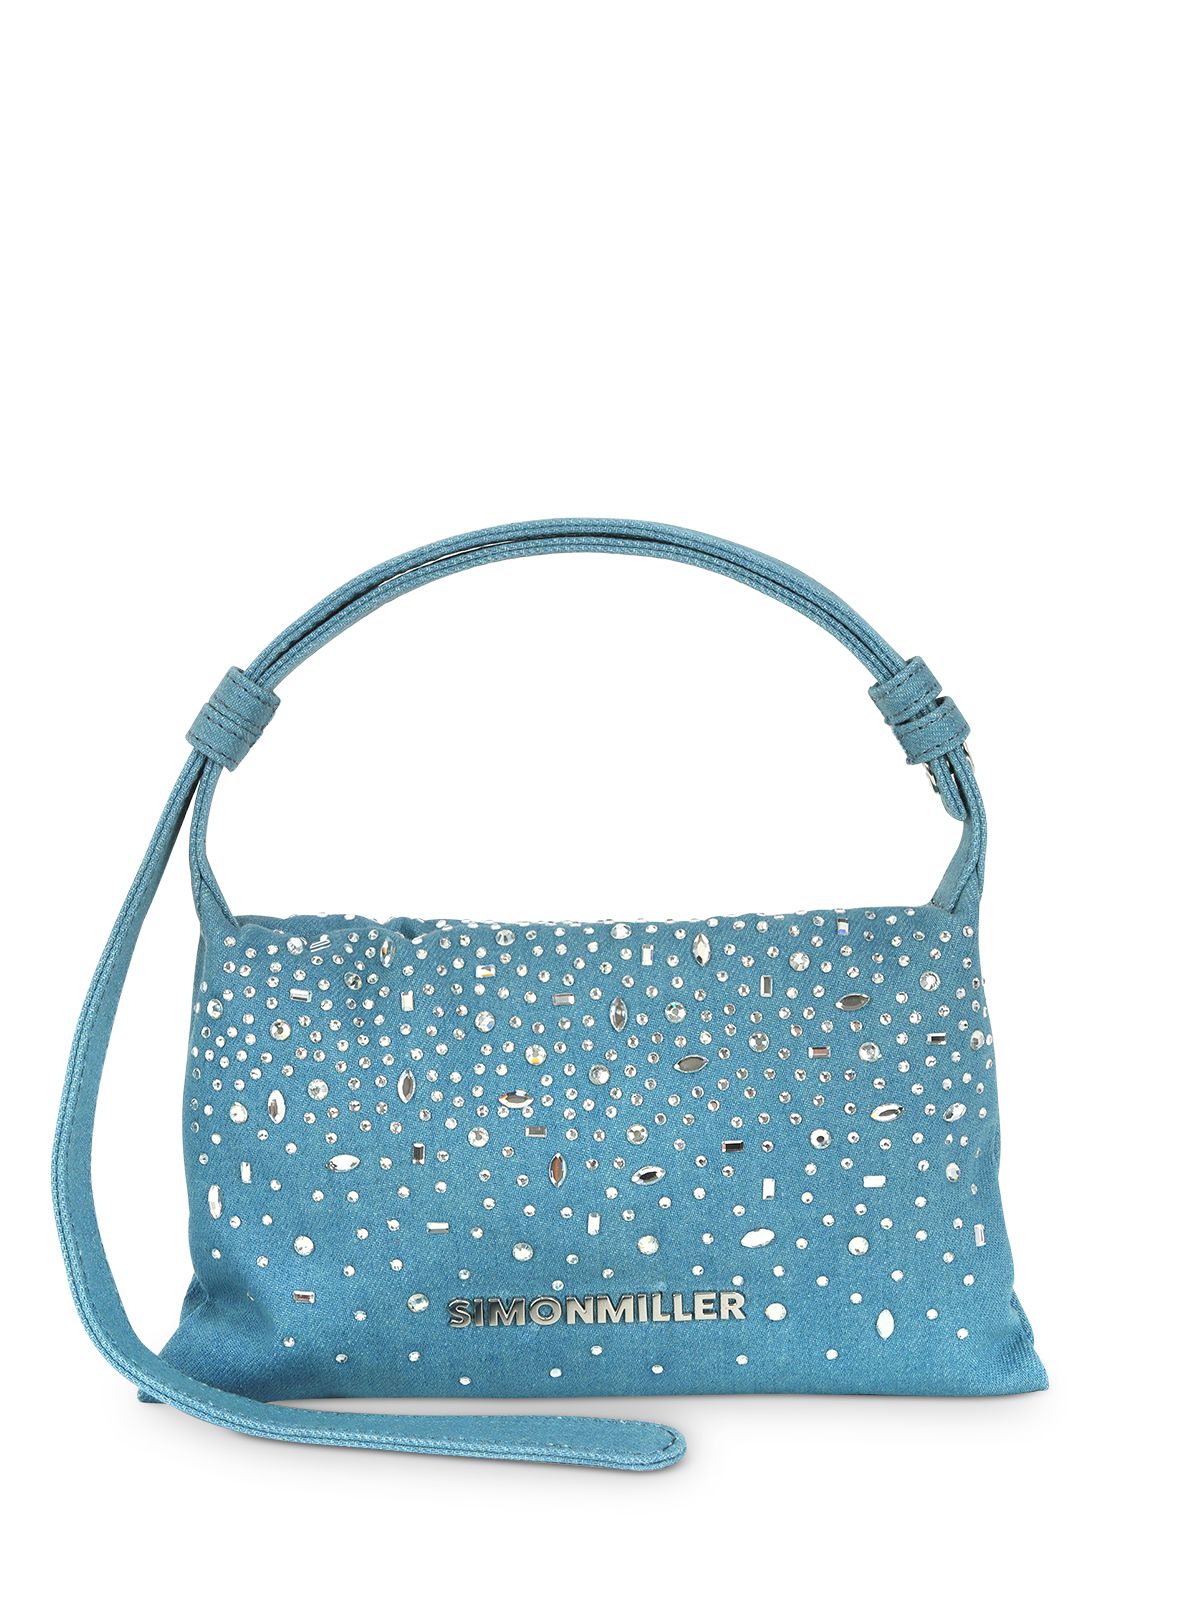 SIMON MILLER Women's Blue Rhinestone Solid Adjustable Strap Shoulder Bag